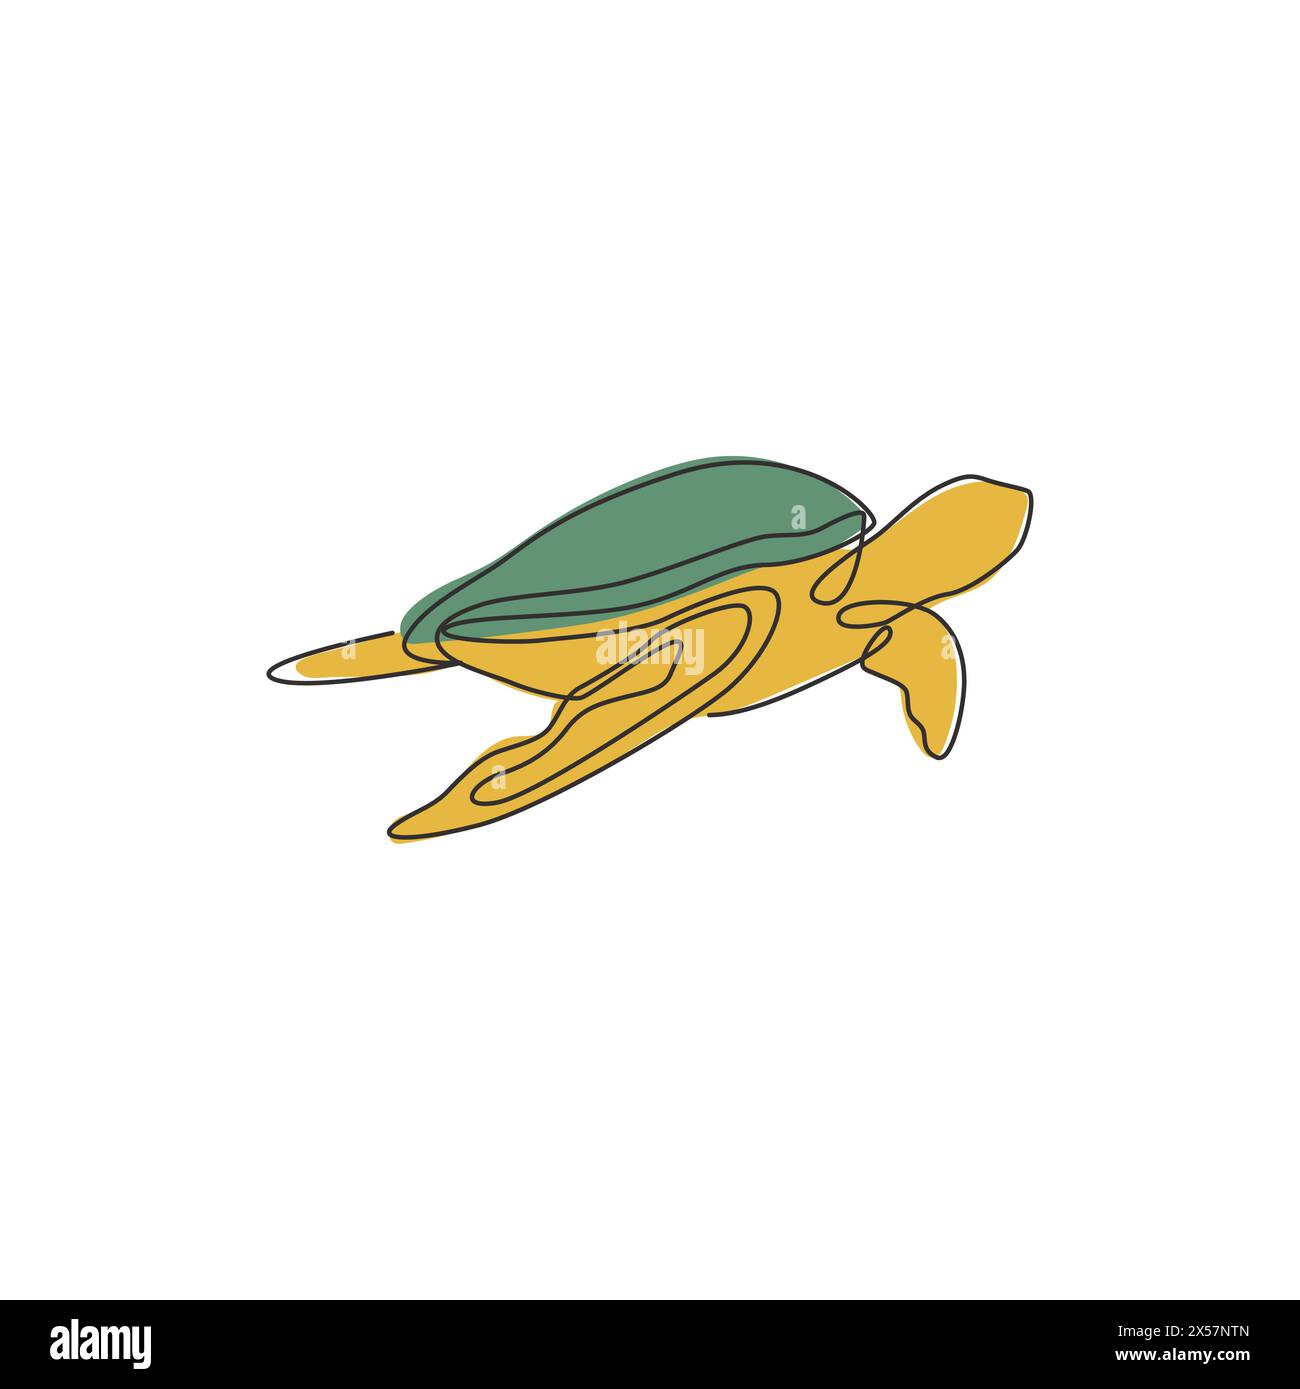 Un dessin en ligne continue de tortue de mer sauvage pour l'identité du logo du parc aquatique aquatique aquatique. Concept de mascotte animal reptile océanique mignon pour l'organisation de l'environnement Illustration de Vecteur